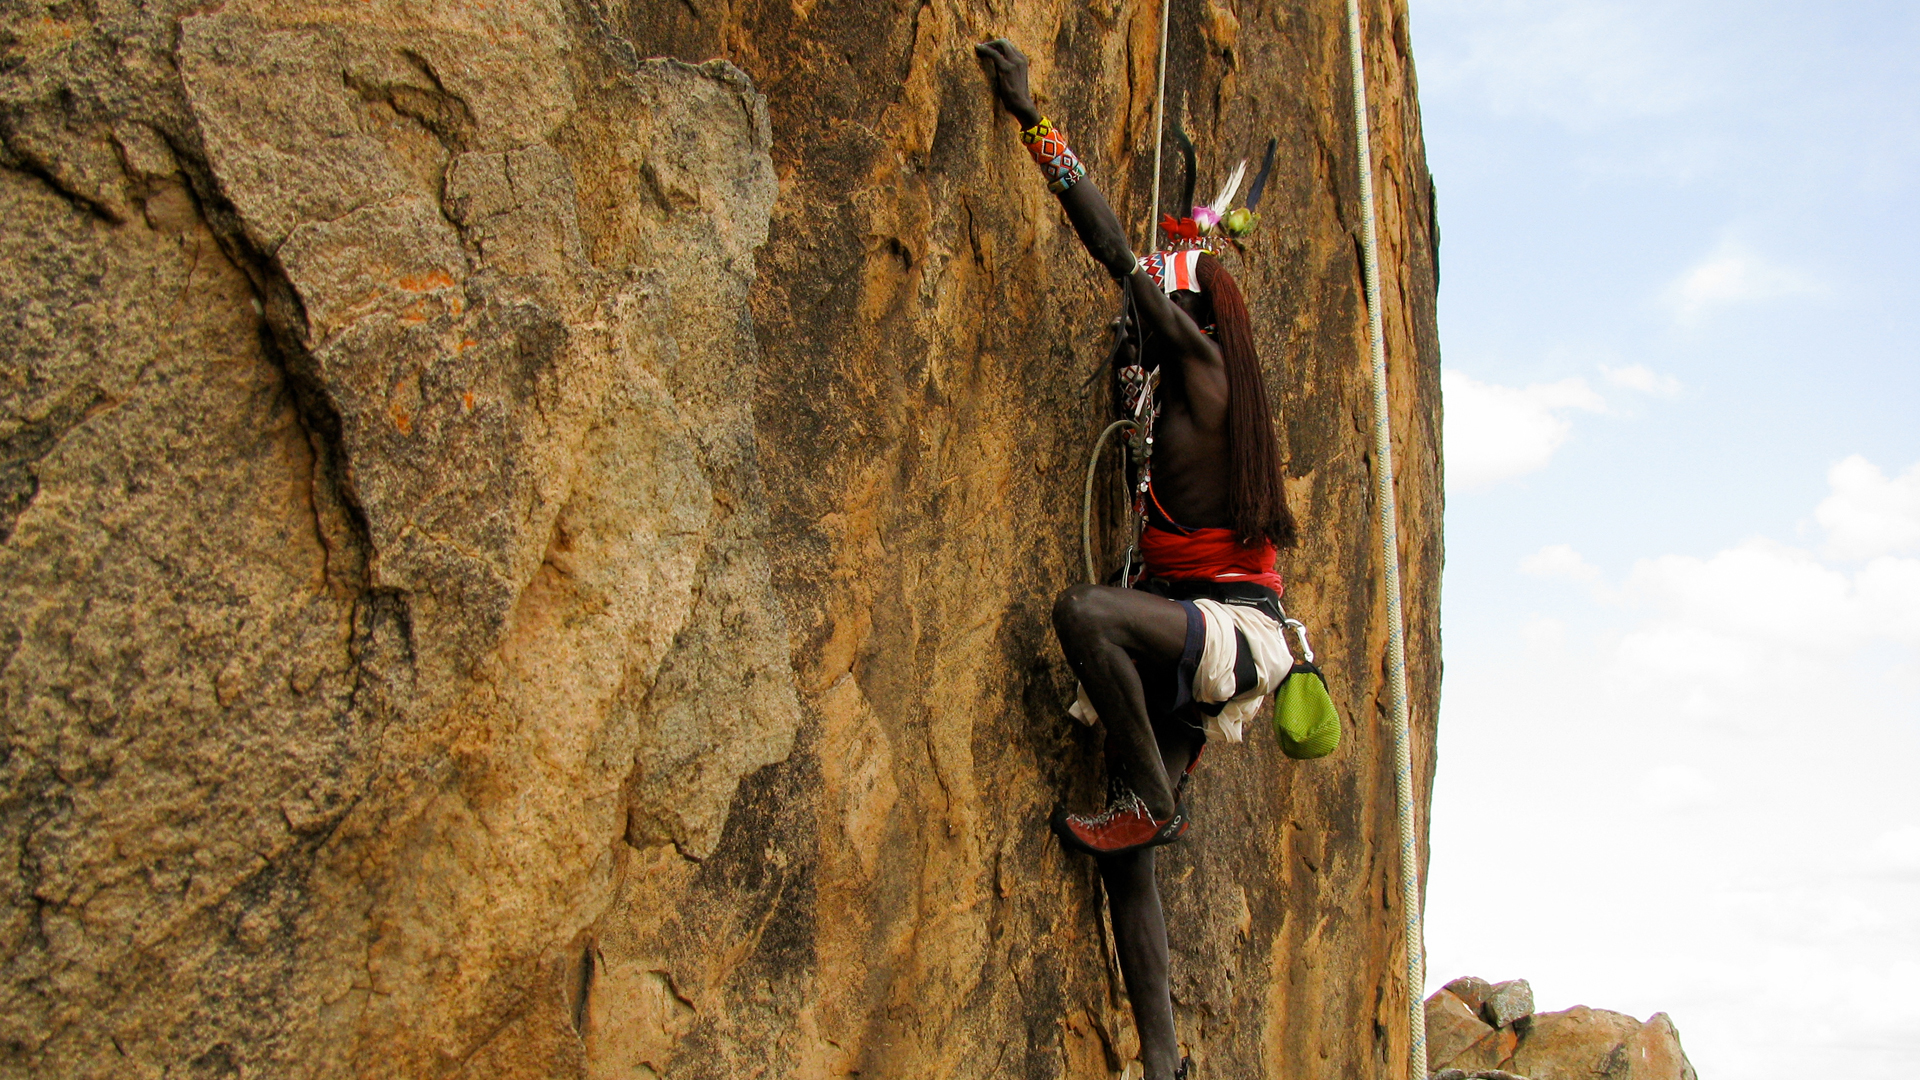 kenya activities - karisia rock climbing